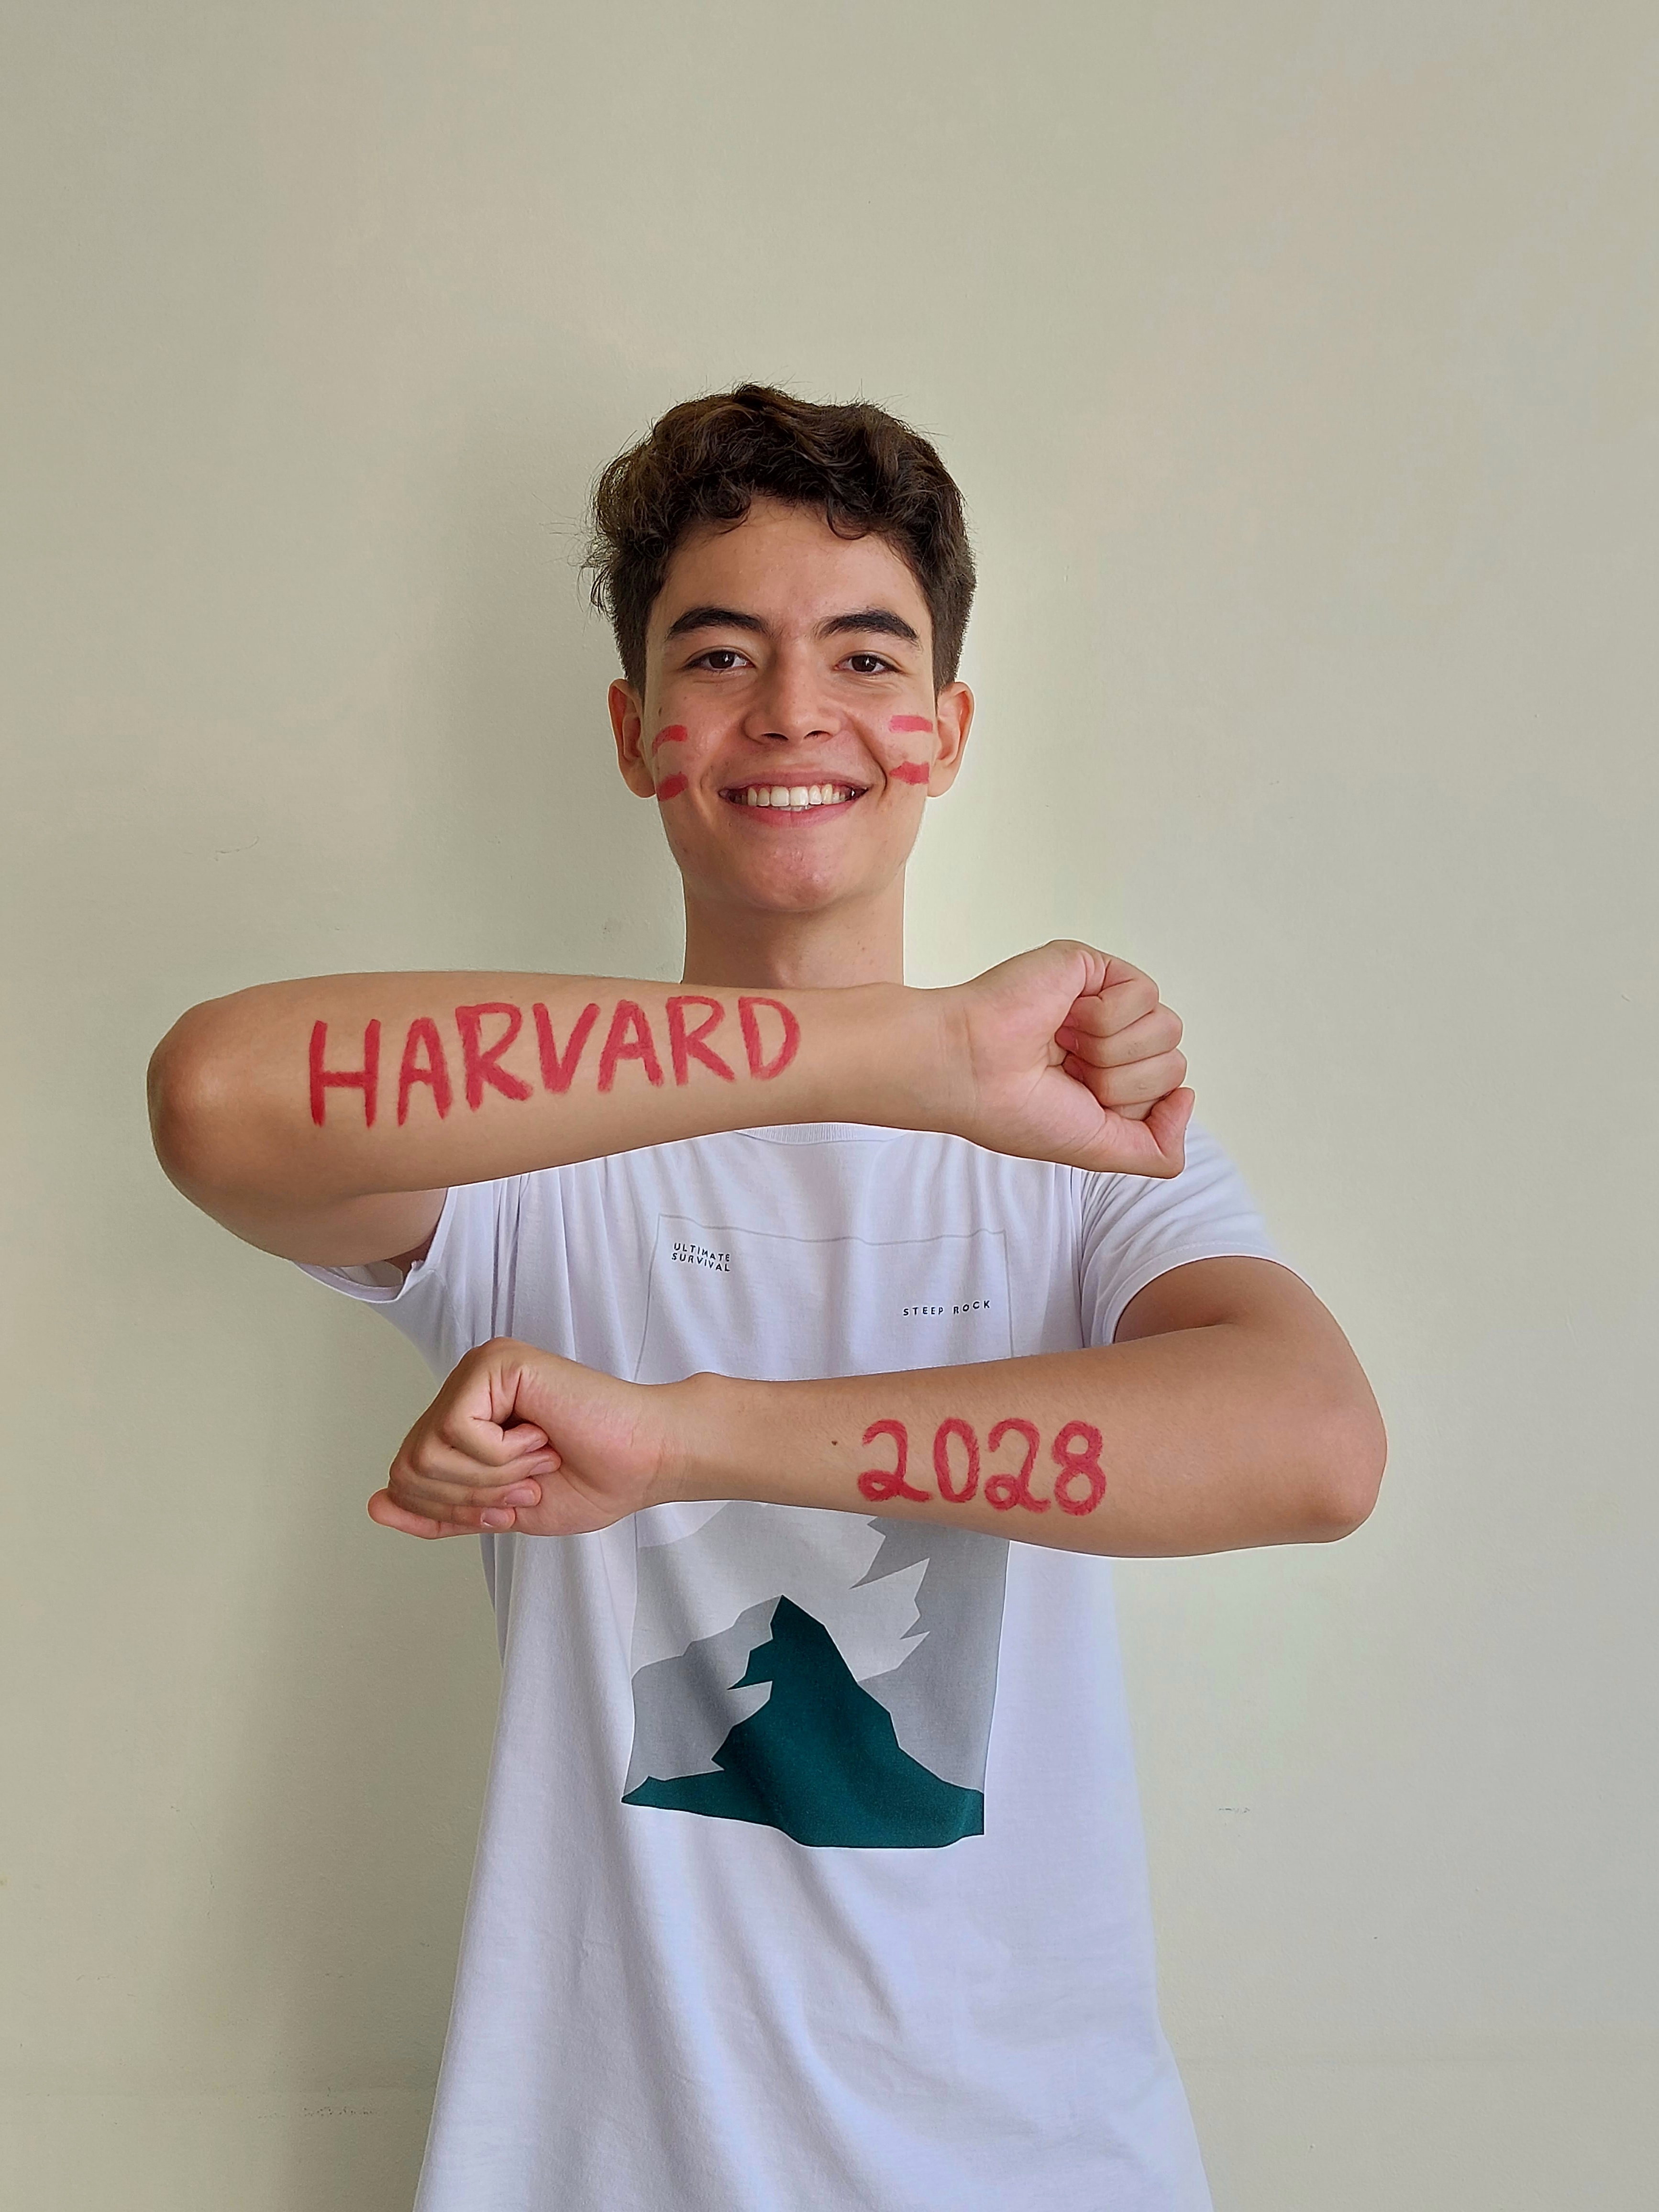 Harvard Class of 2028